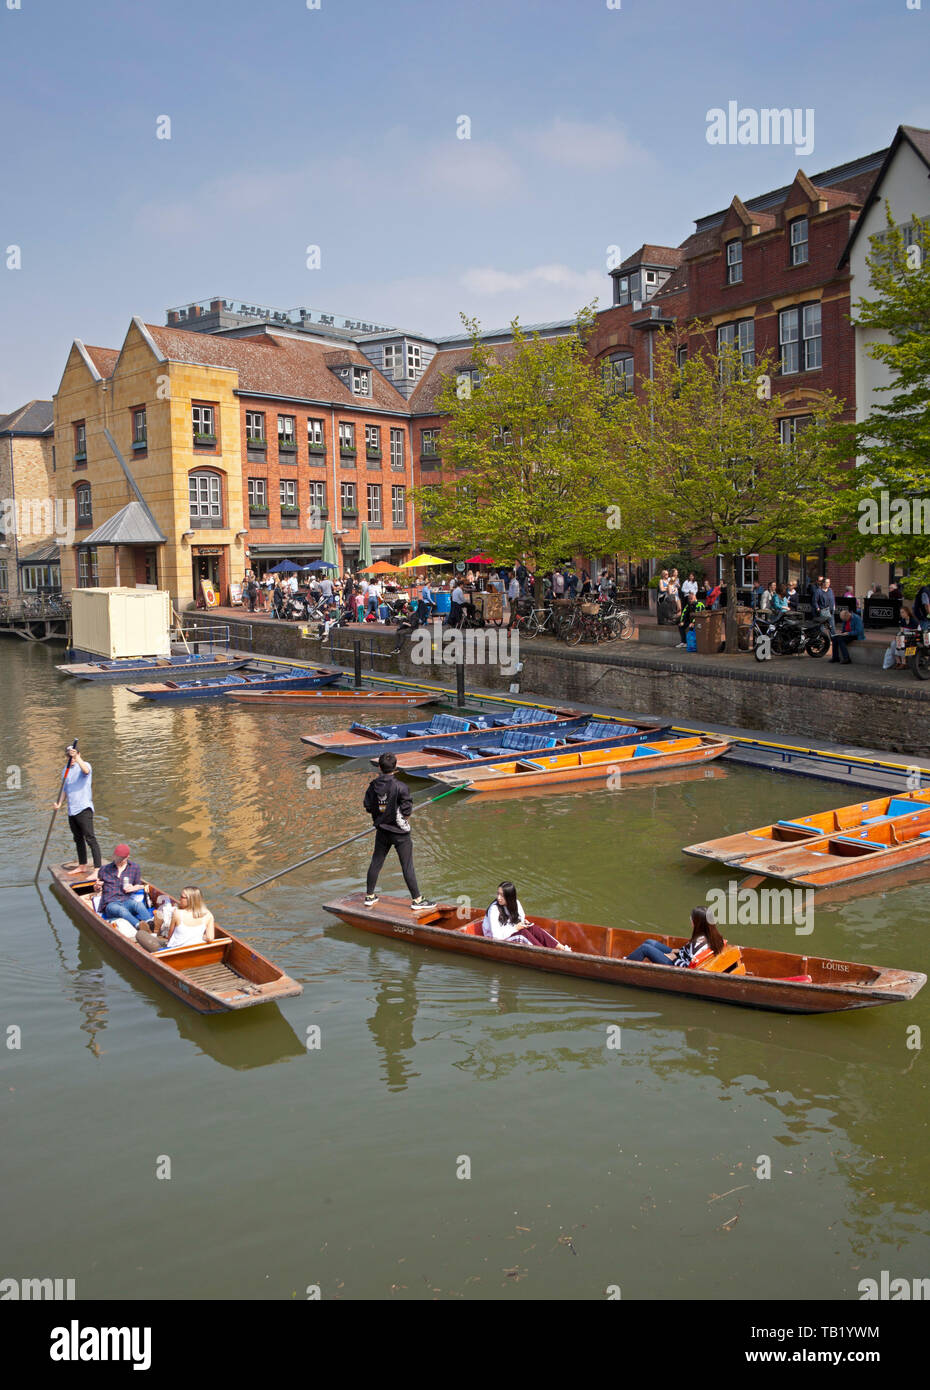 Barques sur la rivière Cam, Cambridge, England, UK Banque D'Images